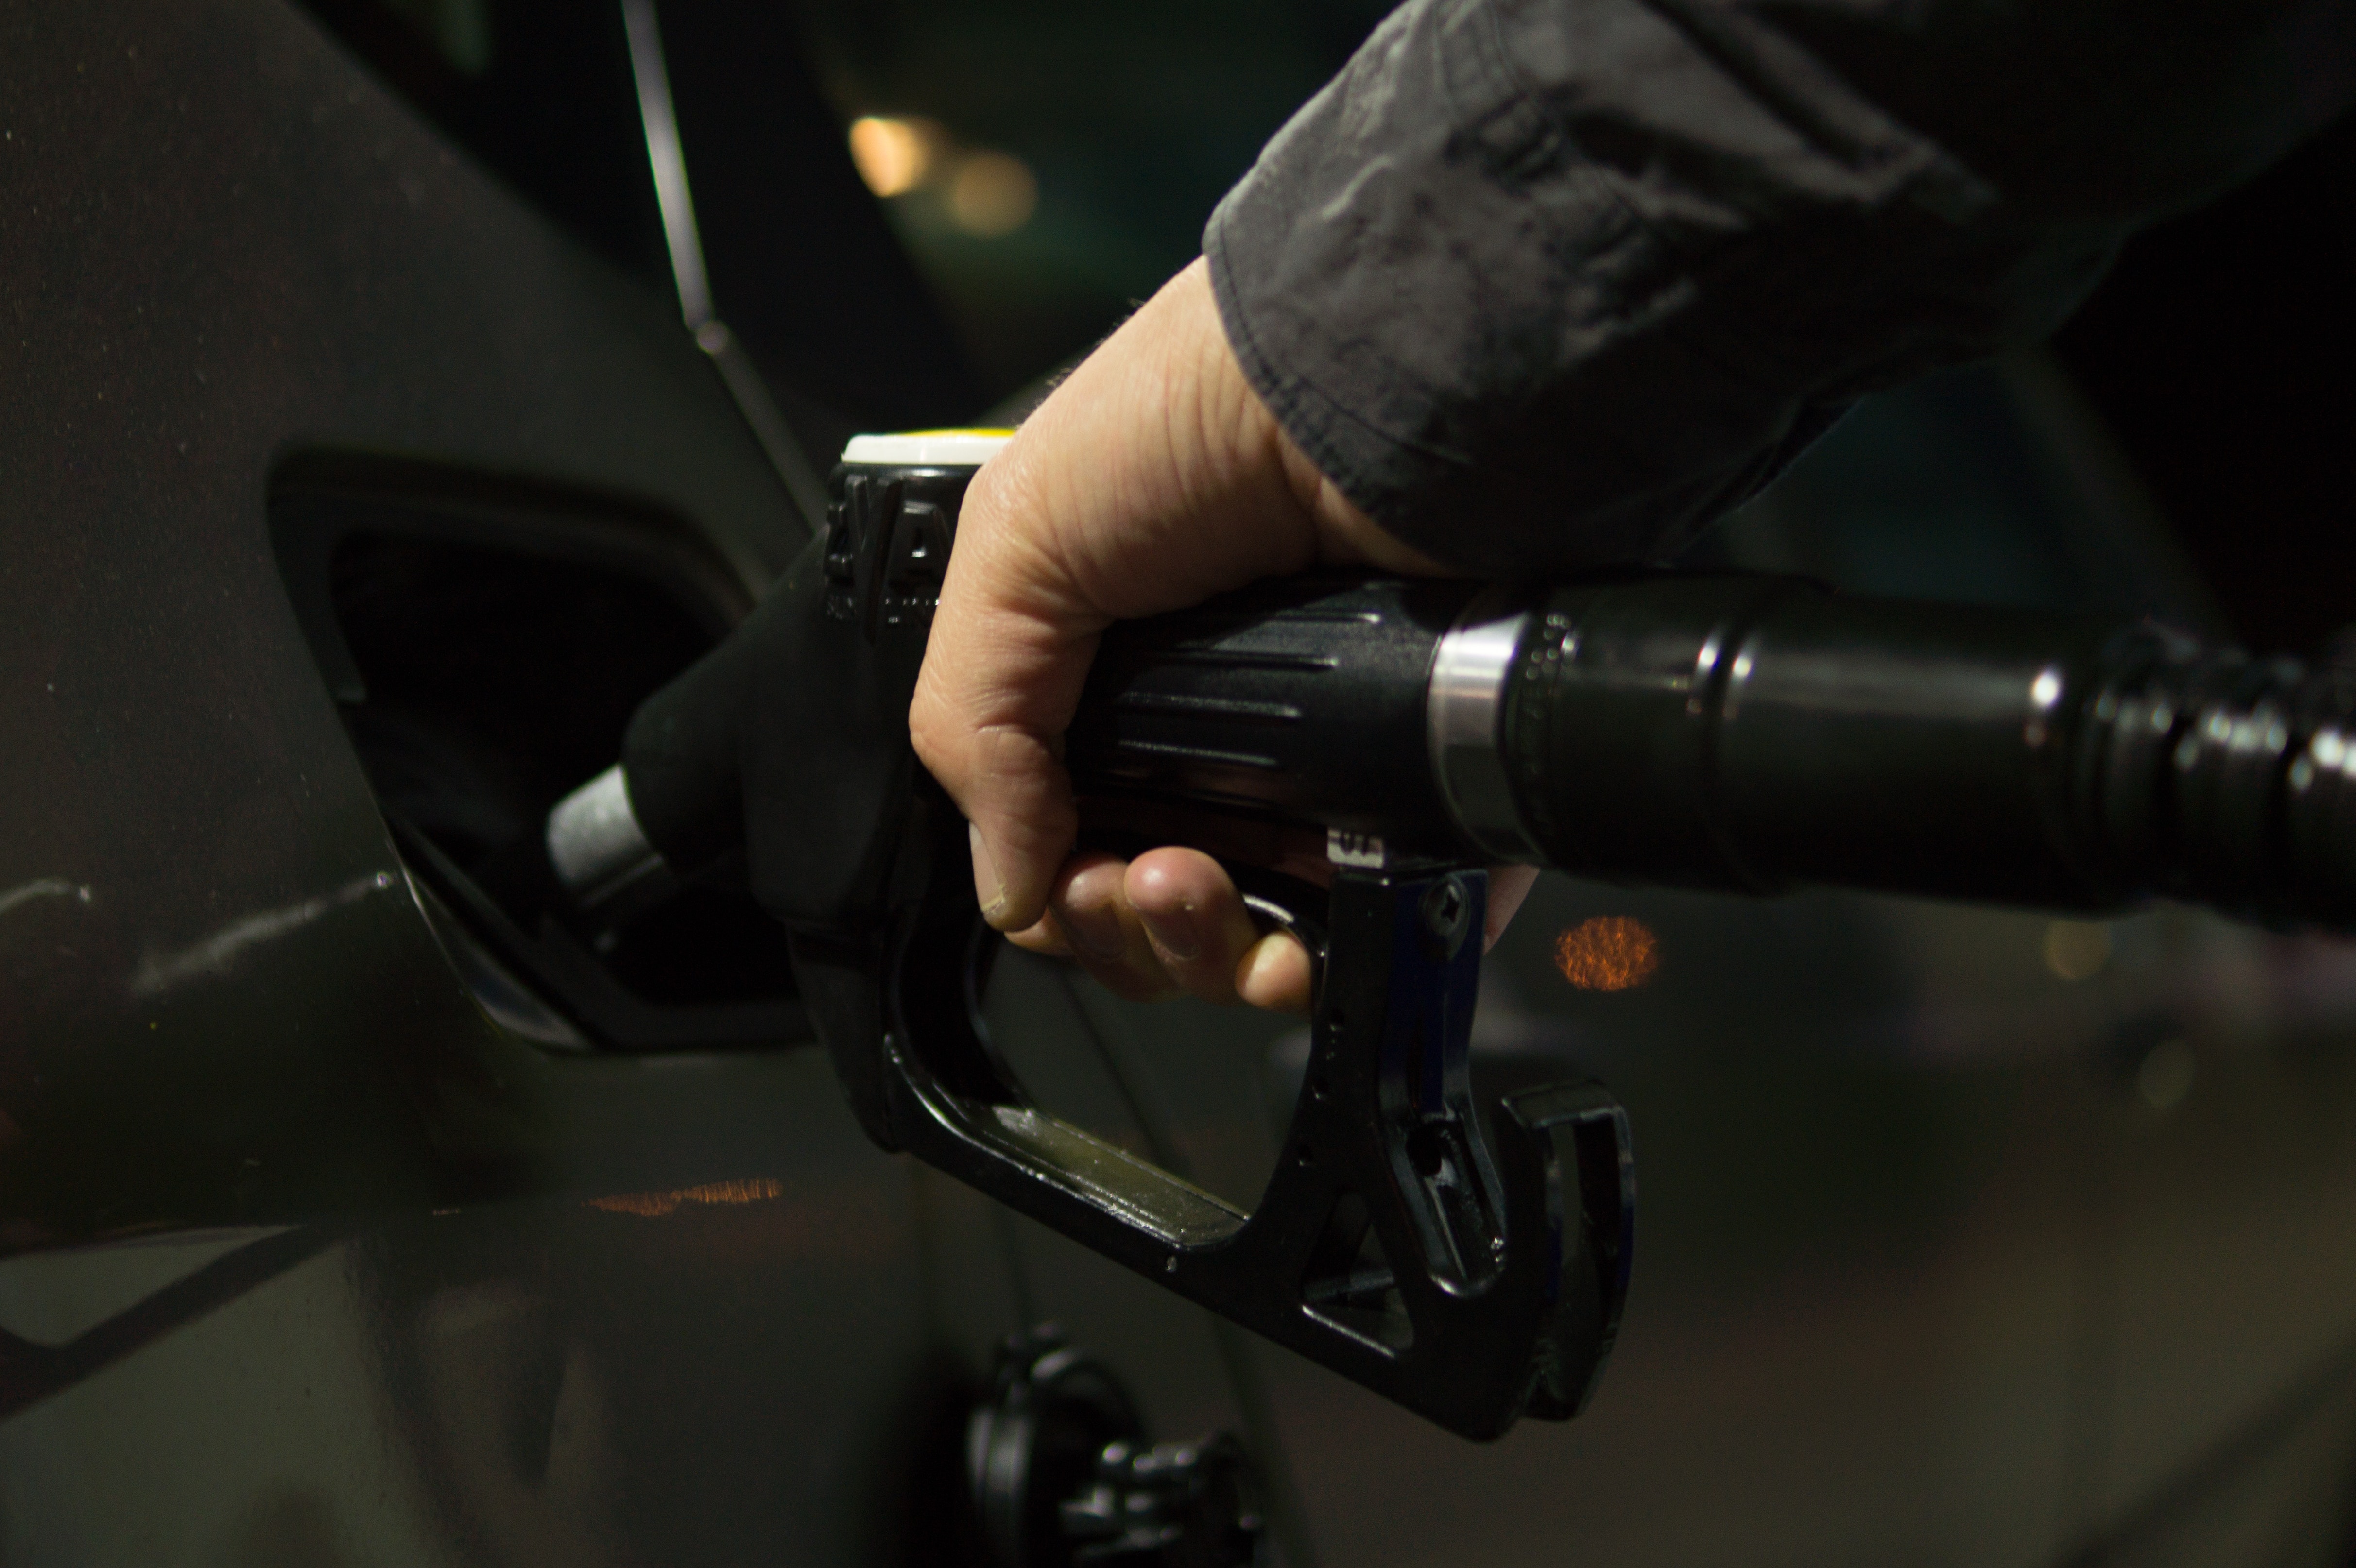 Ceny na stacjach paliw mogą wzrosnąć